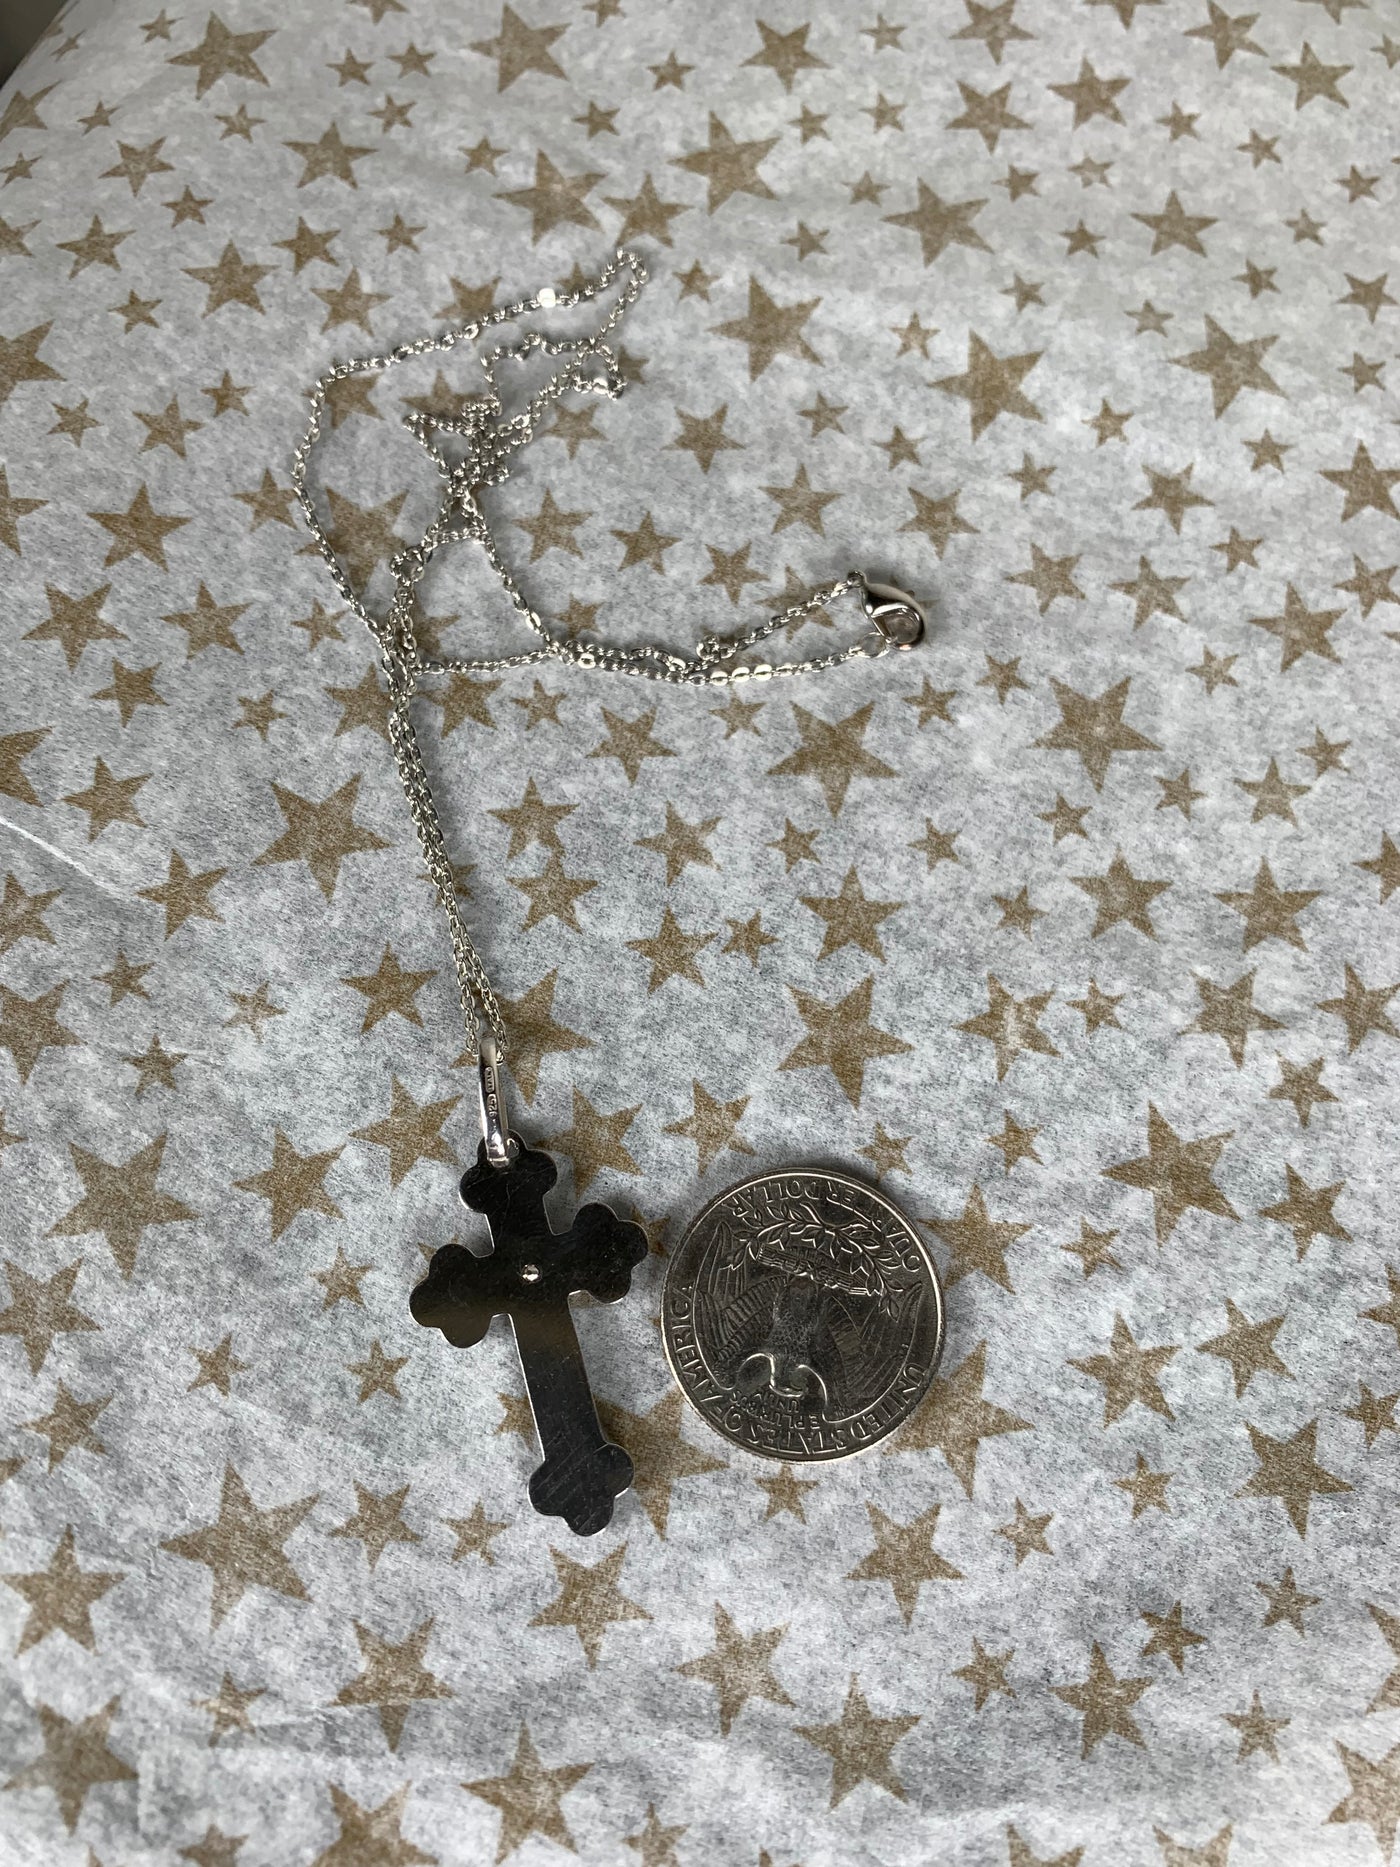 Jesus & Cross Pendant in Sterling Silver